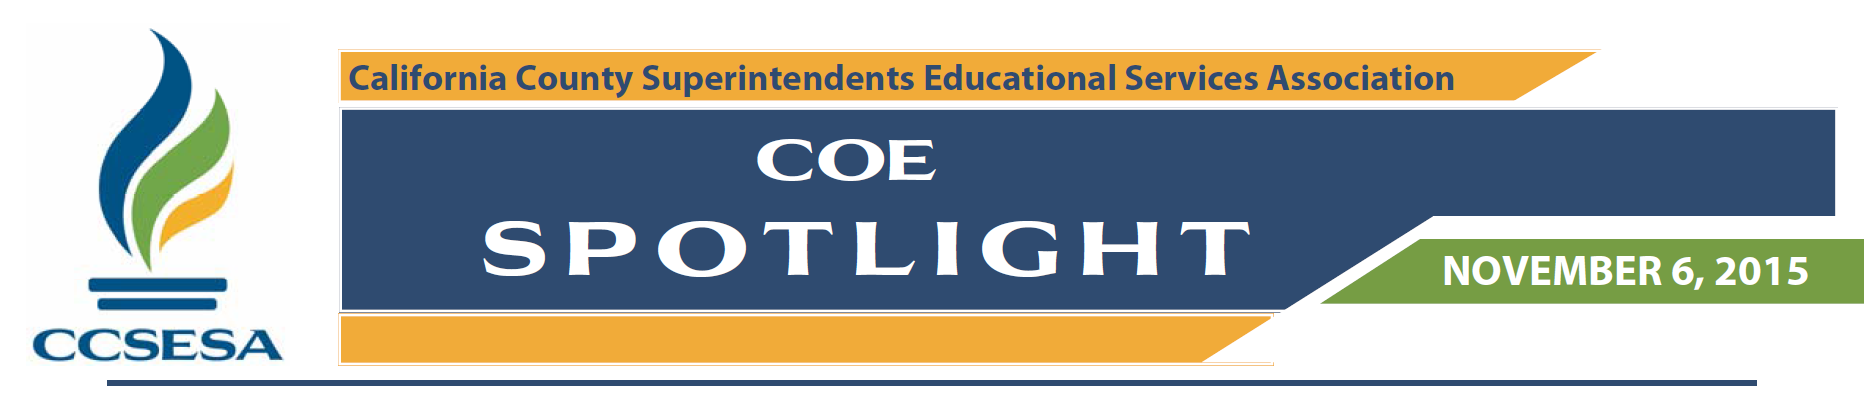 COE Spotlight 11.6.2015